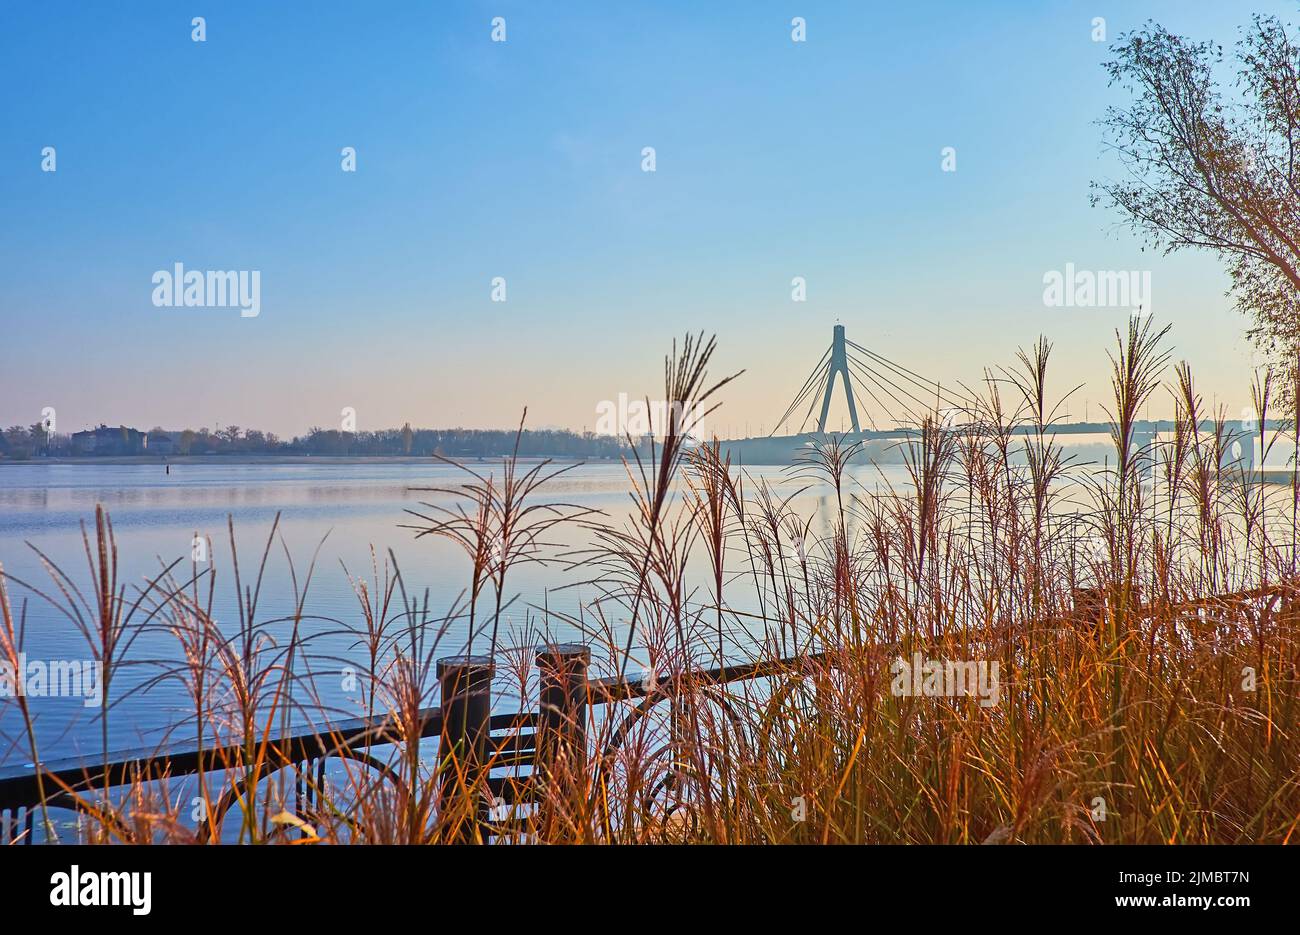 Profitez de la matinée d'automne brumeuse dans le parc Natalka sur la rivière Dnieper avec une vue sur les épais jaunes secs de l'herbe argentée et de la brumeux Pivnichnyi (nord) Brigg Banque D'Images